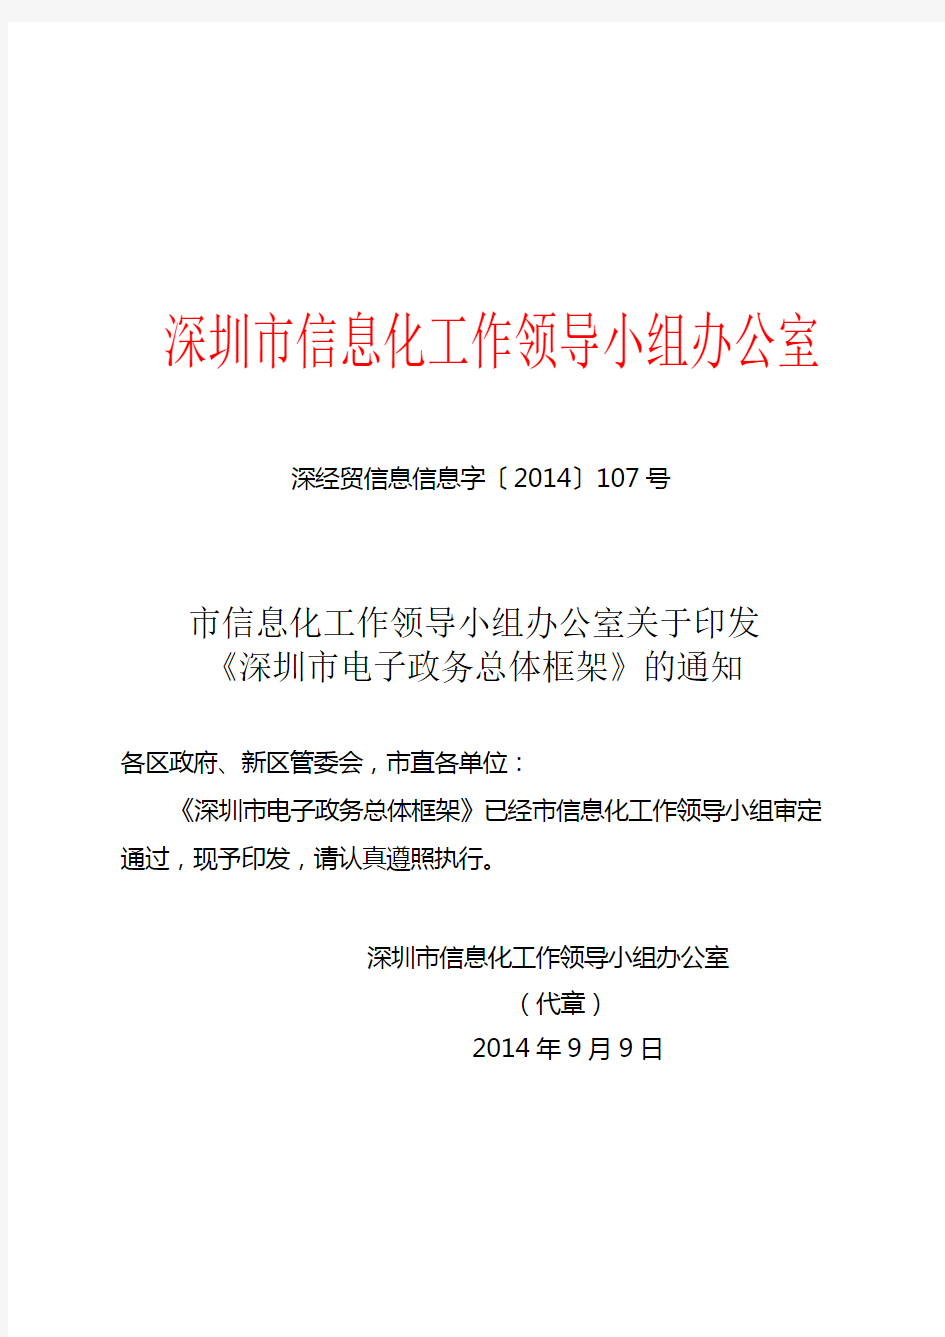 深圳电子政务总体框架的通知-深圳政府